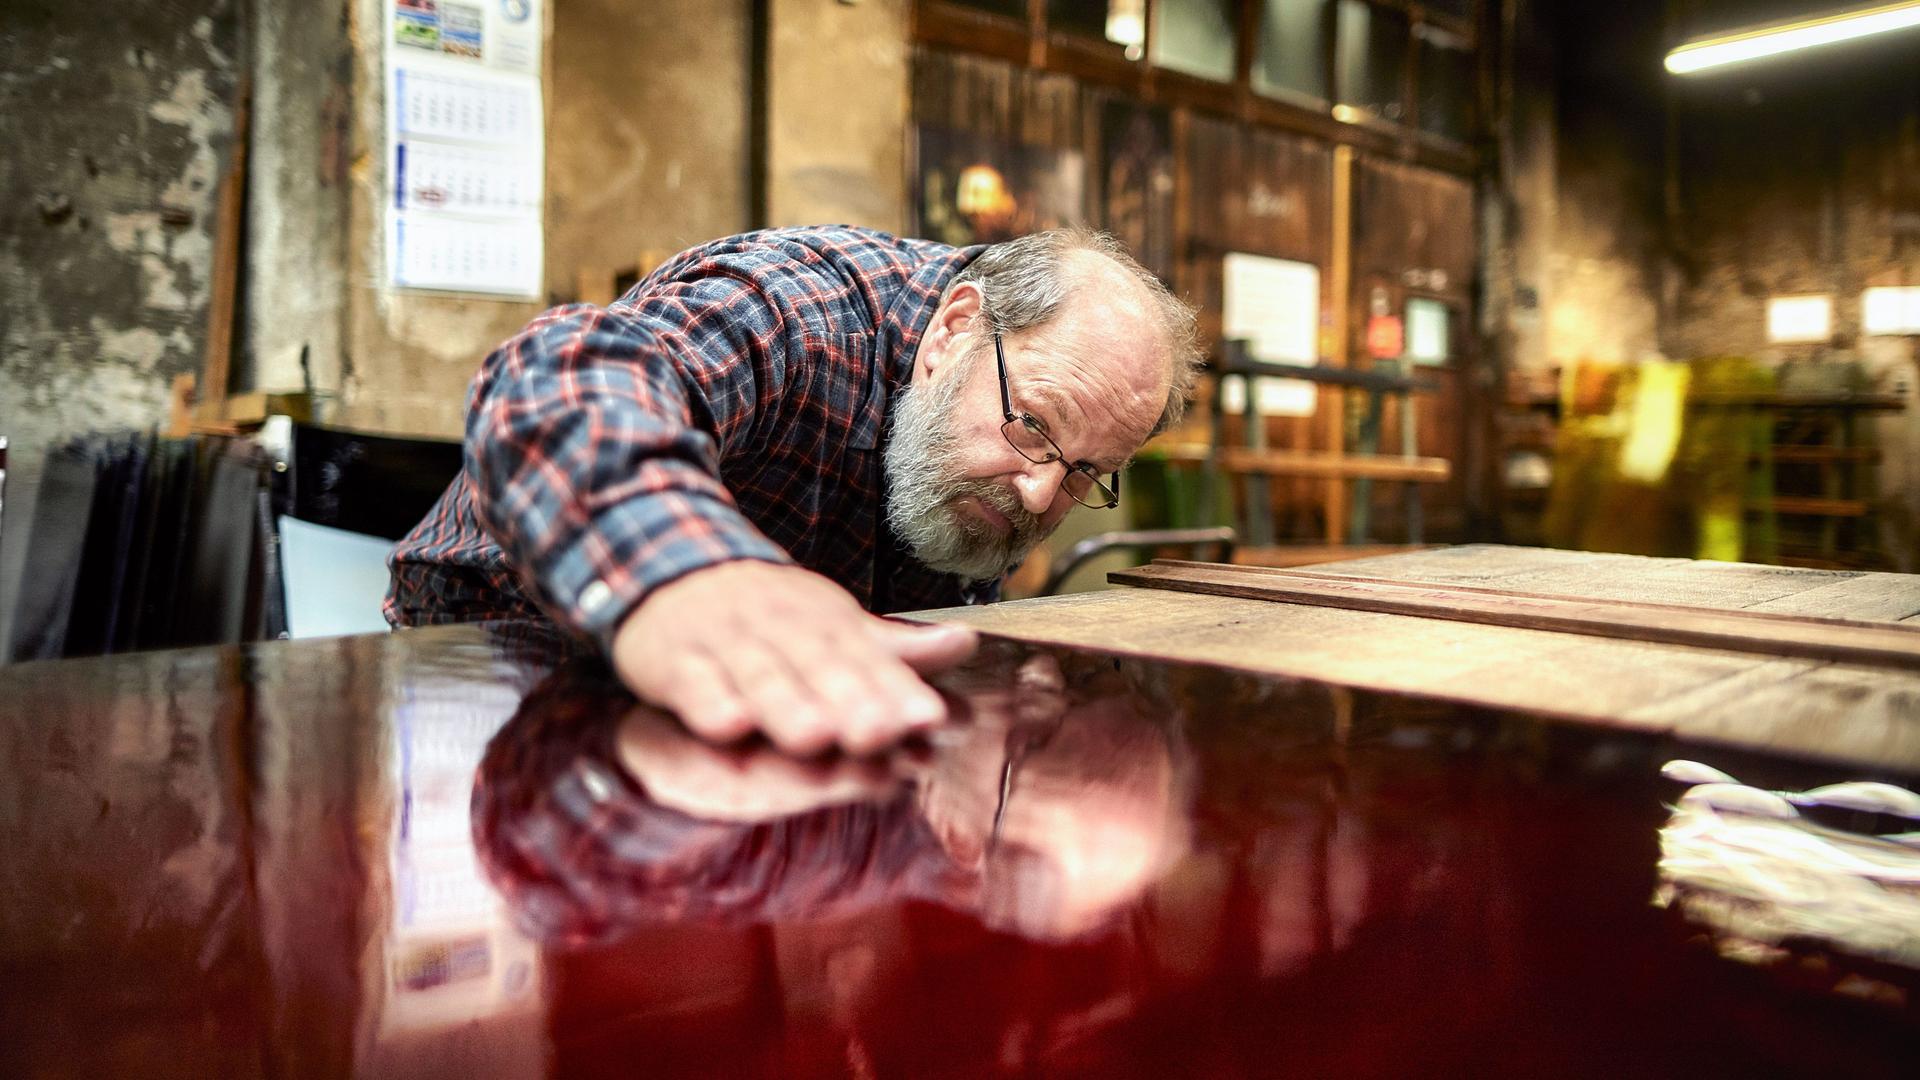 Ein älterer Mann mit Brille und Vollbart beugt sich in einer Werkstatt über eine glatte, rot lackierte Oberfläche und hält die flache Hand darauf.